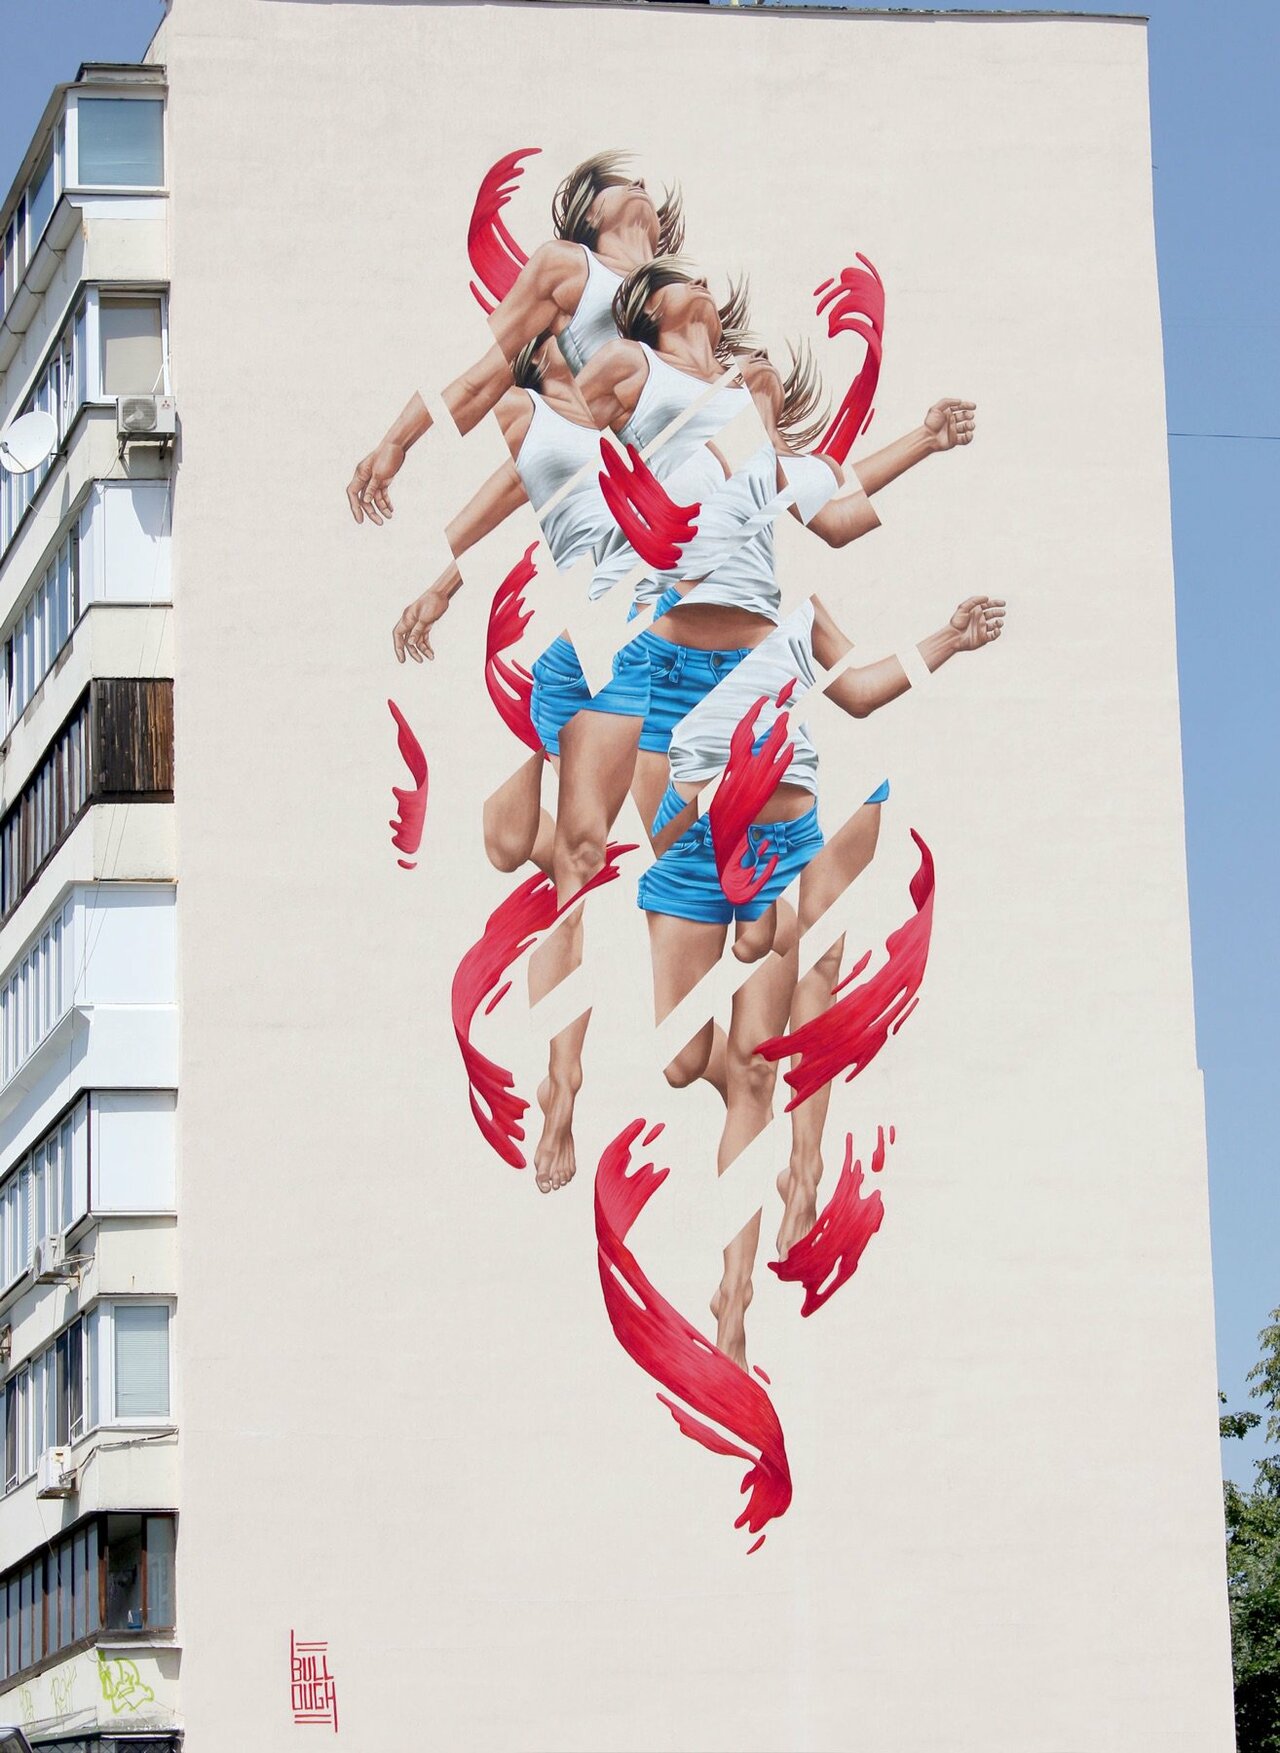 “Rise” by James Bullough in Kiev, Ukraine #streetart https://streetartnews.net/2016/07/rise-by-james-bullough-in-kiev-ukraine.html https://t.co/admGMN0Vcs